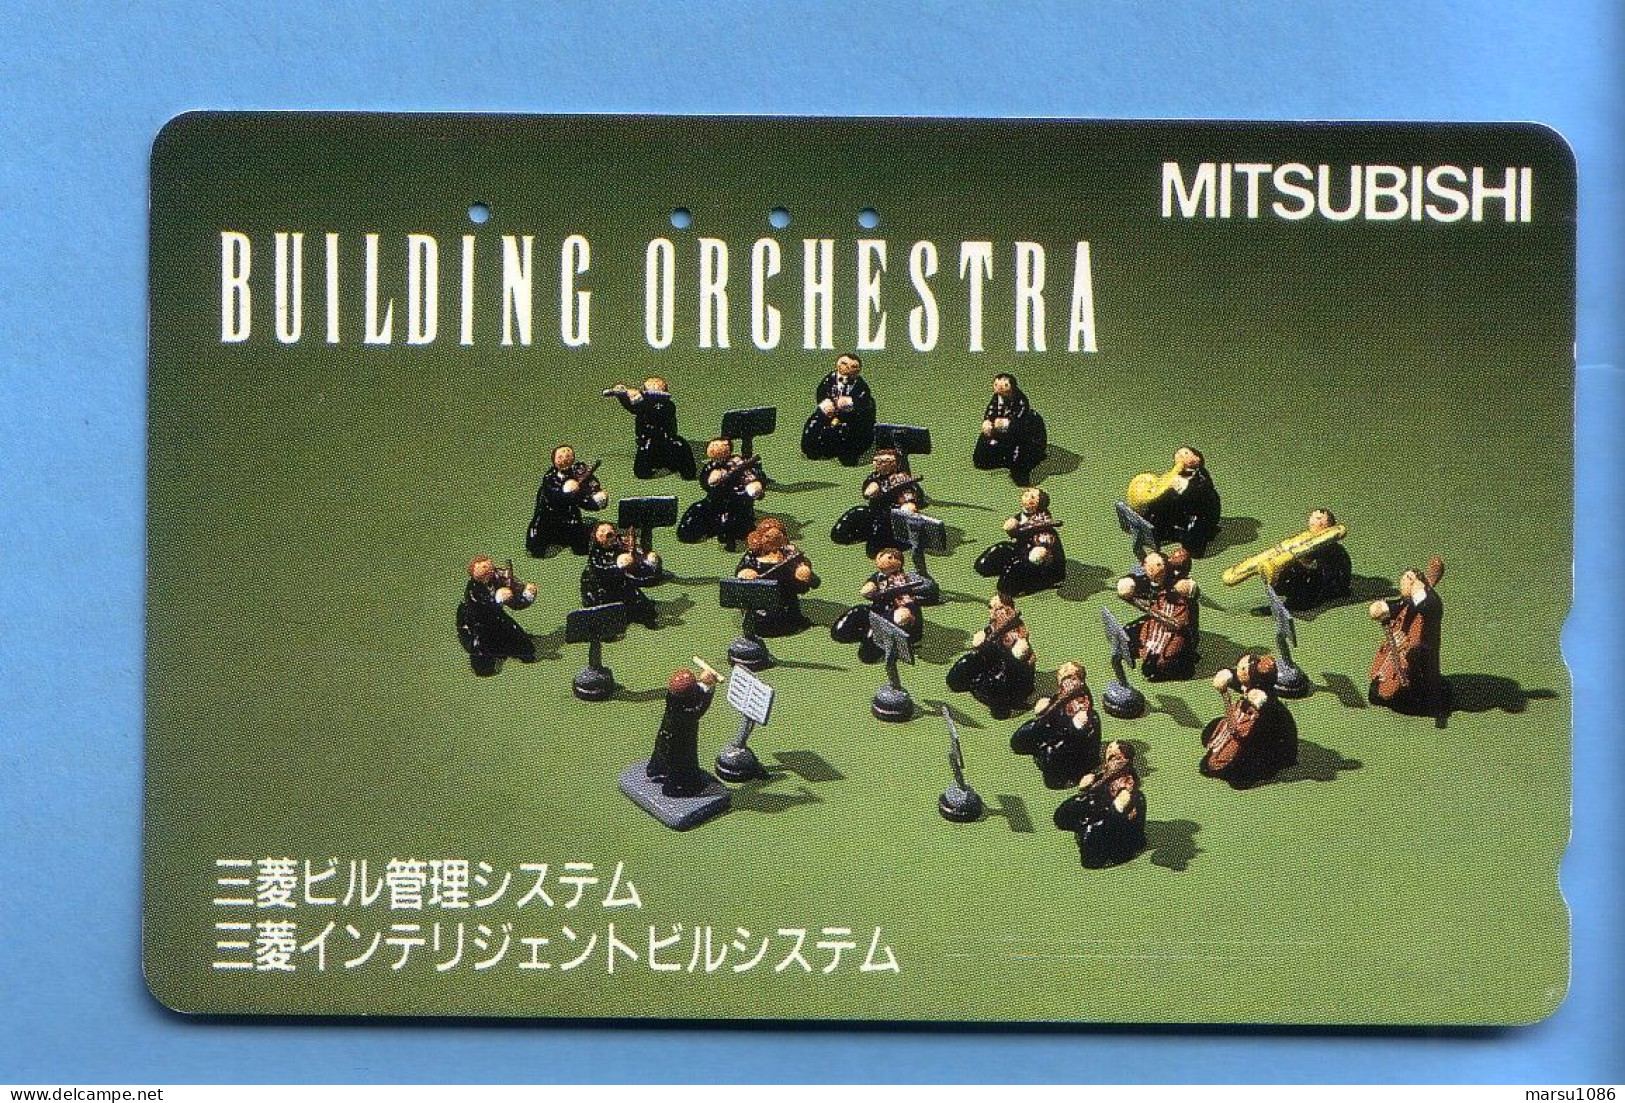 Japan Telefonkarte Japon Télécarte Phonecard - Musik Music Musique Orchestra Dirigent - Musique